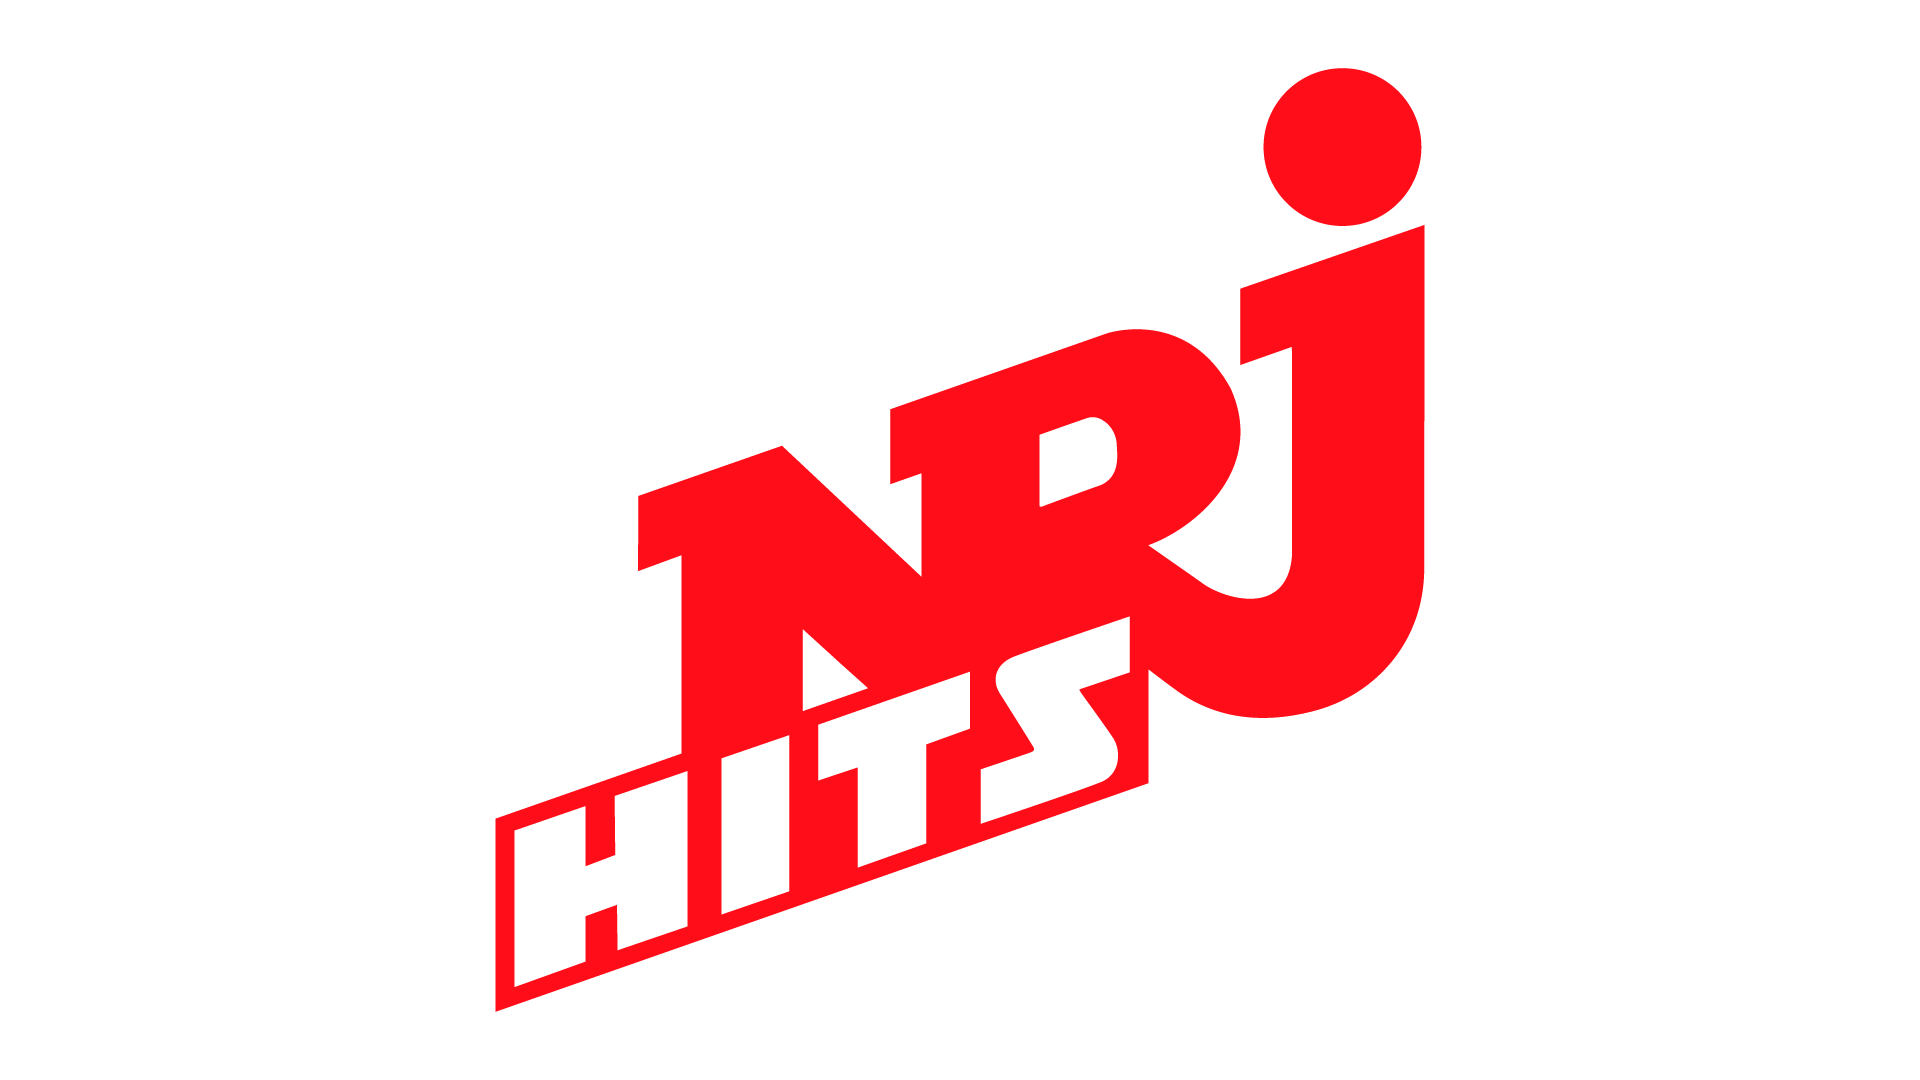 NRJ HITS Live TV, Online